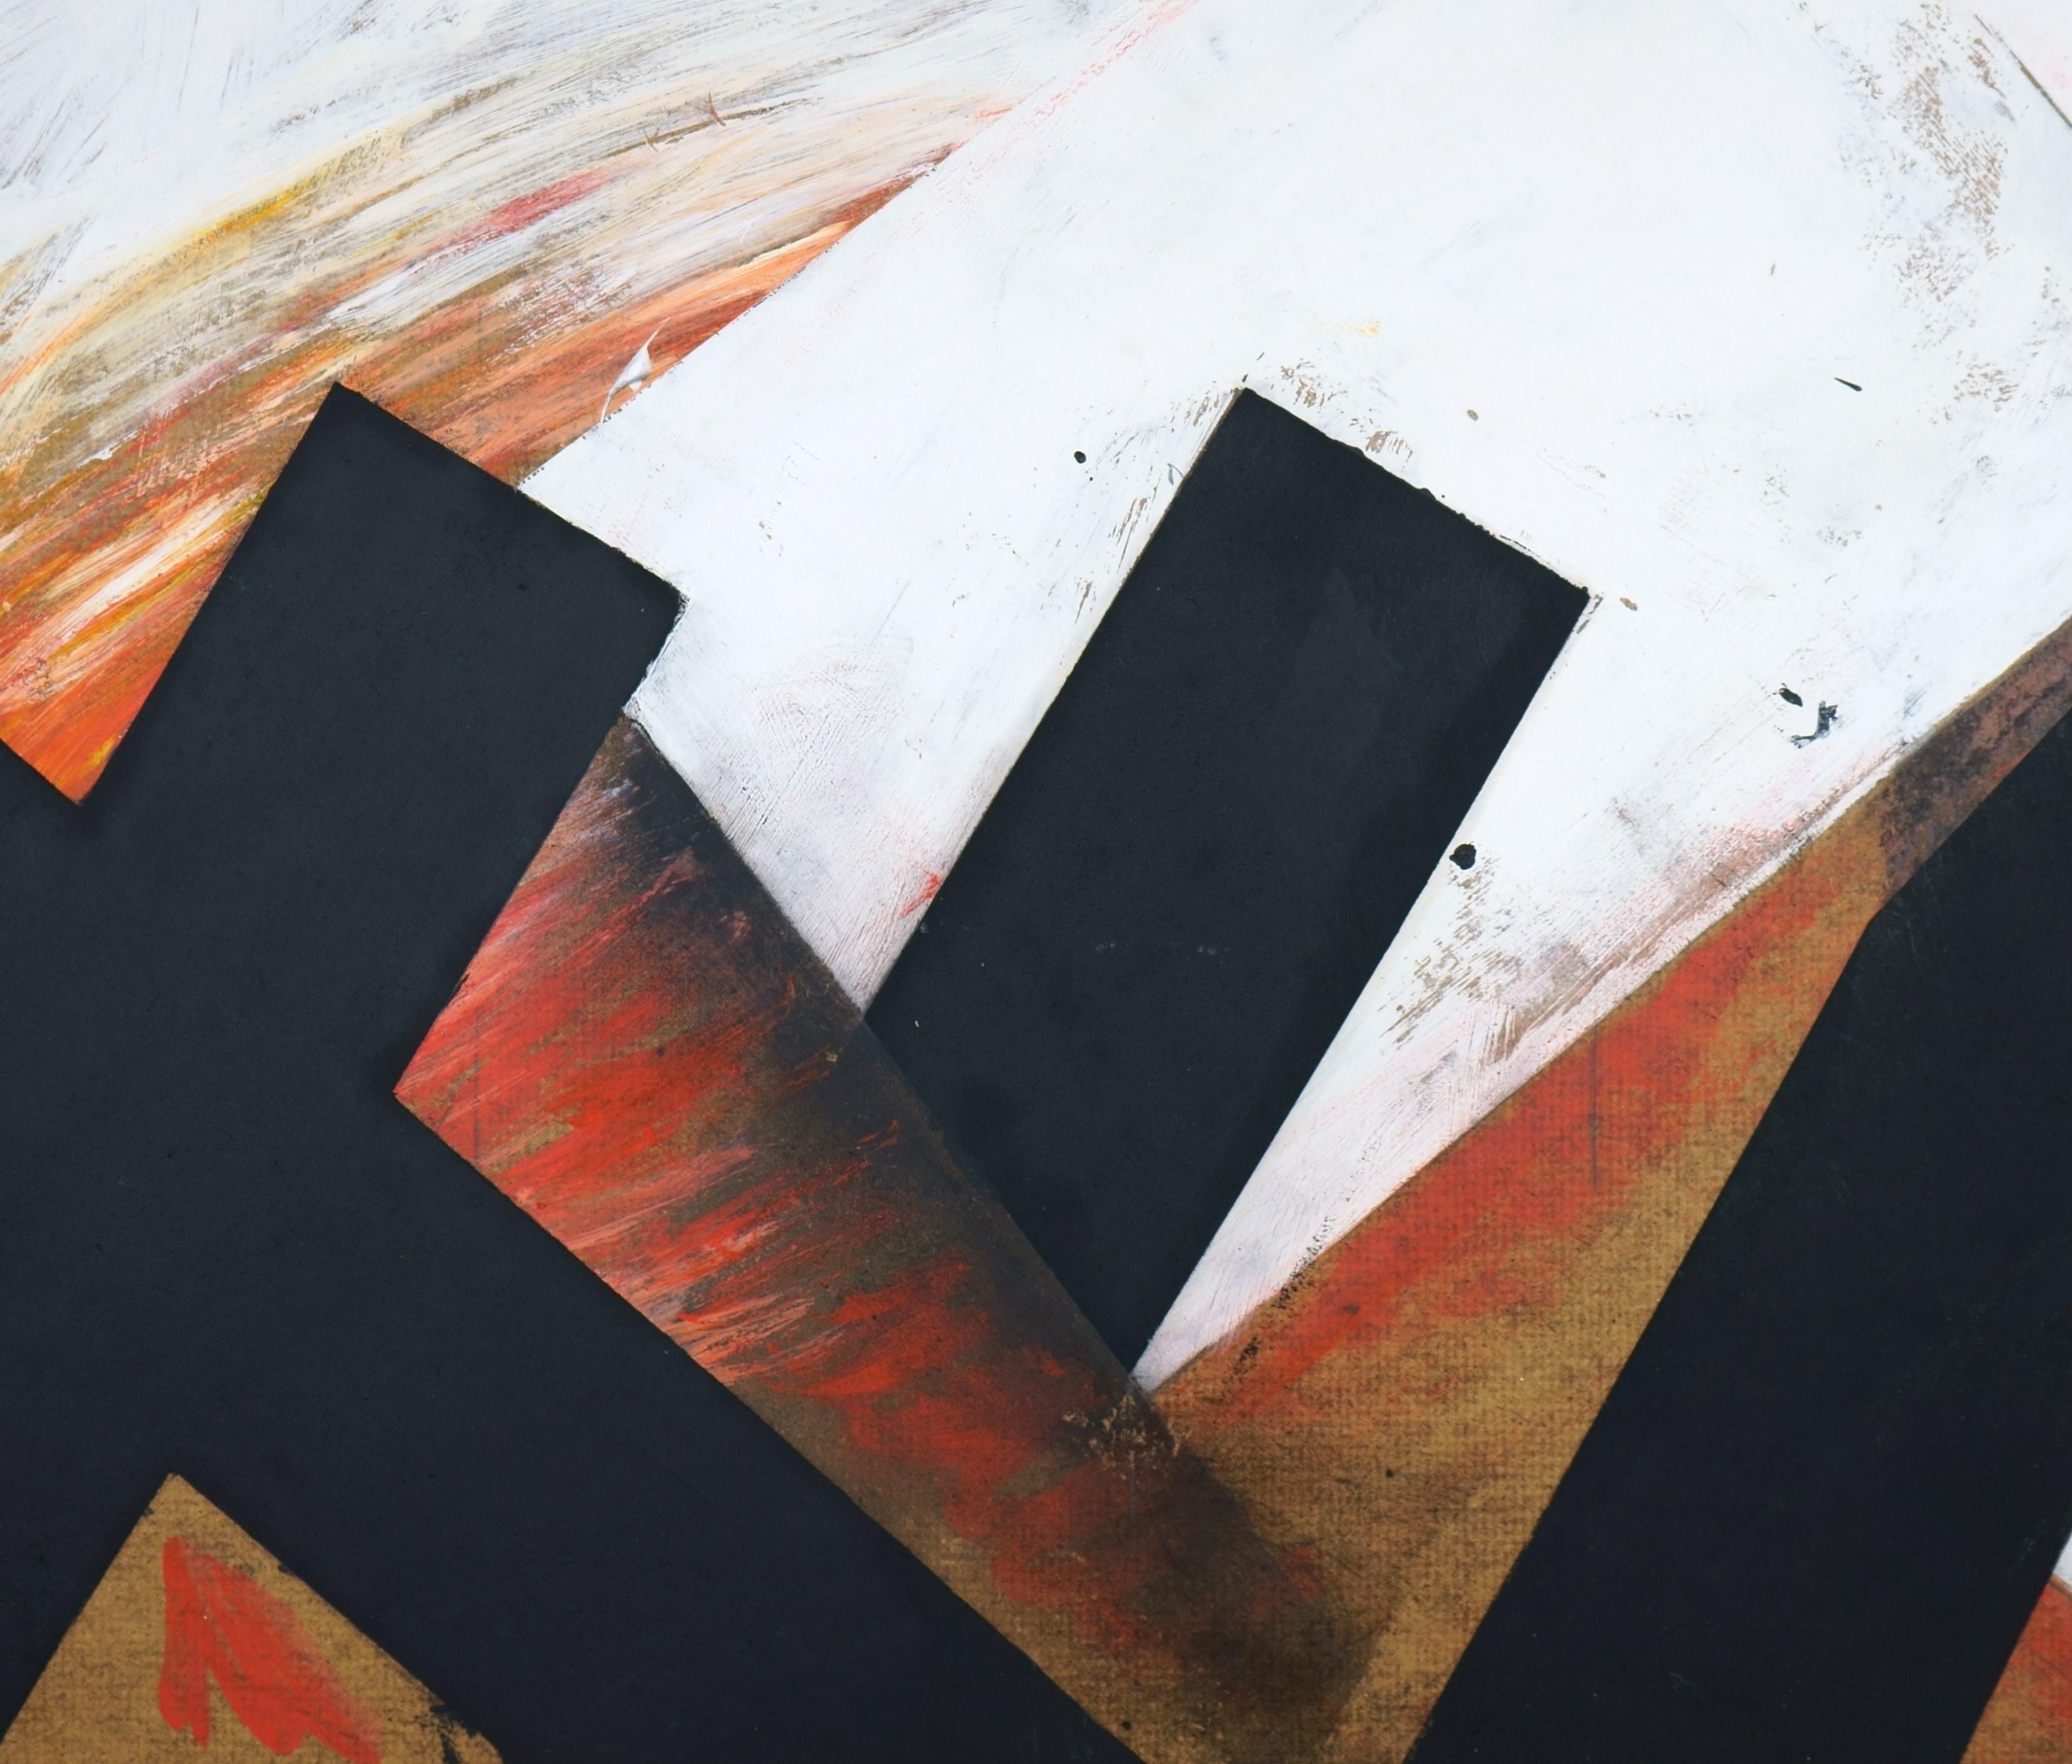 Schwarze Formoberflächen auf rotem malerischem Grund / - Die doppelte Ursprünge der Malerei – Painting von Jürgen Möbius